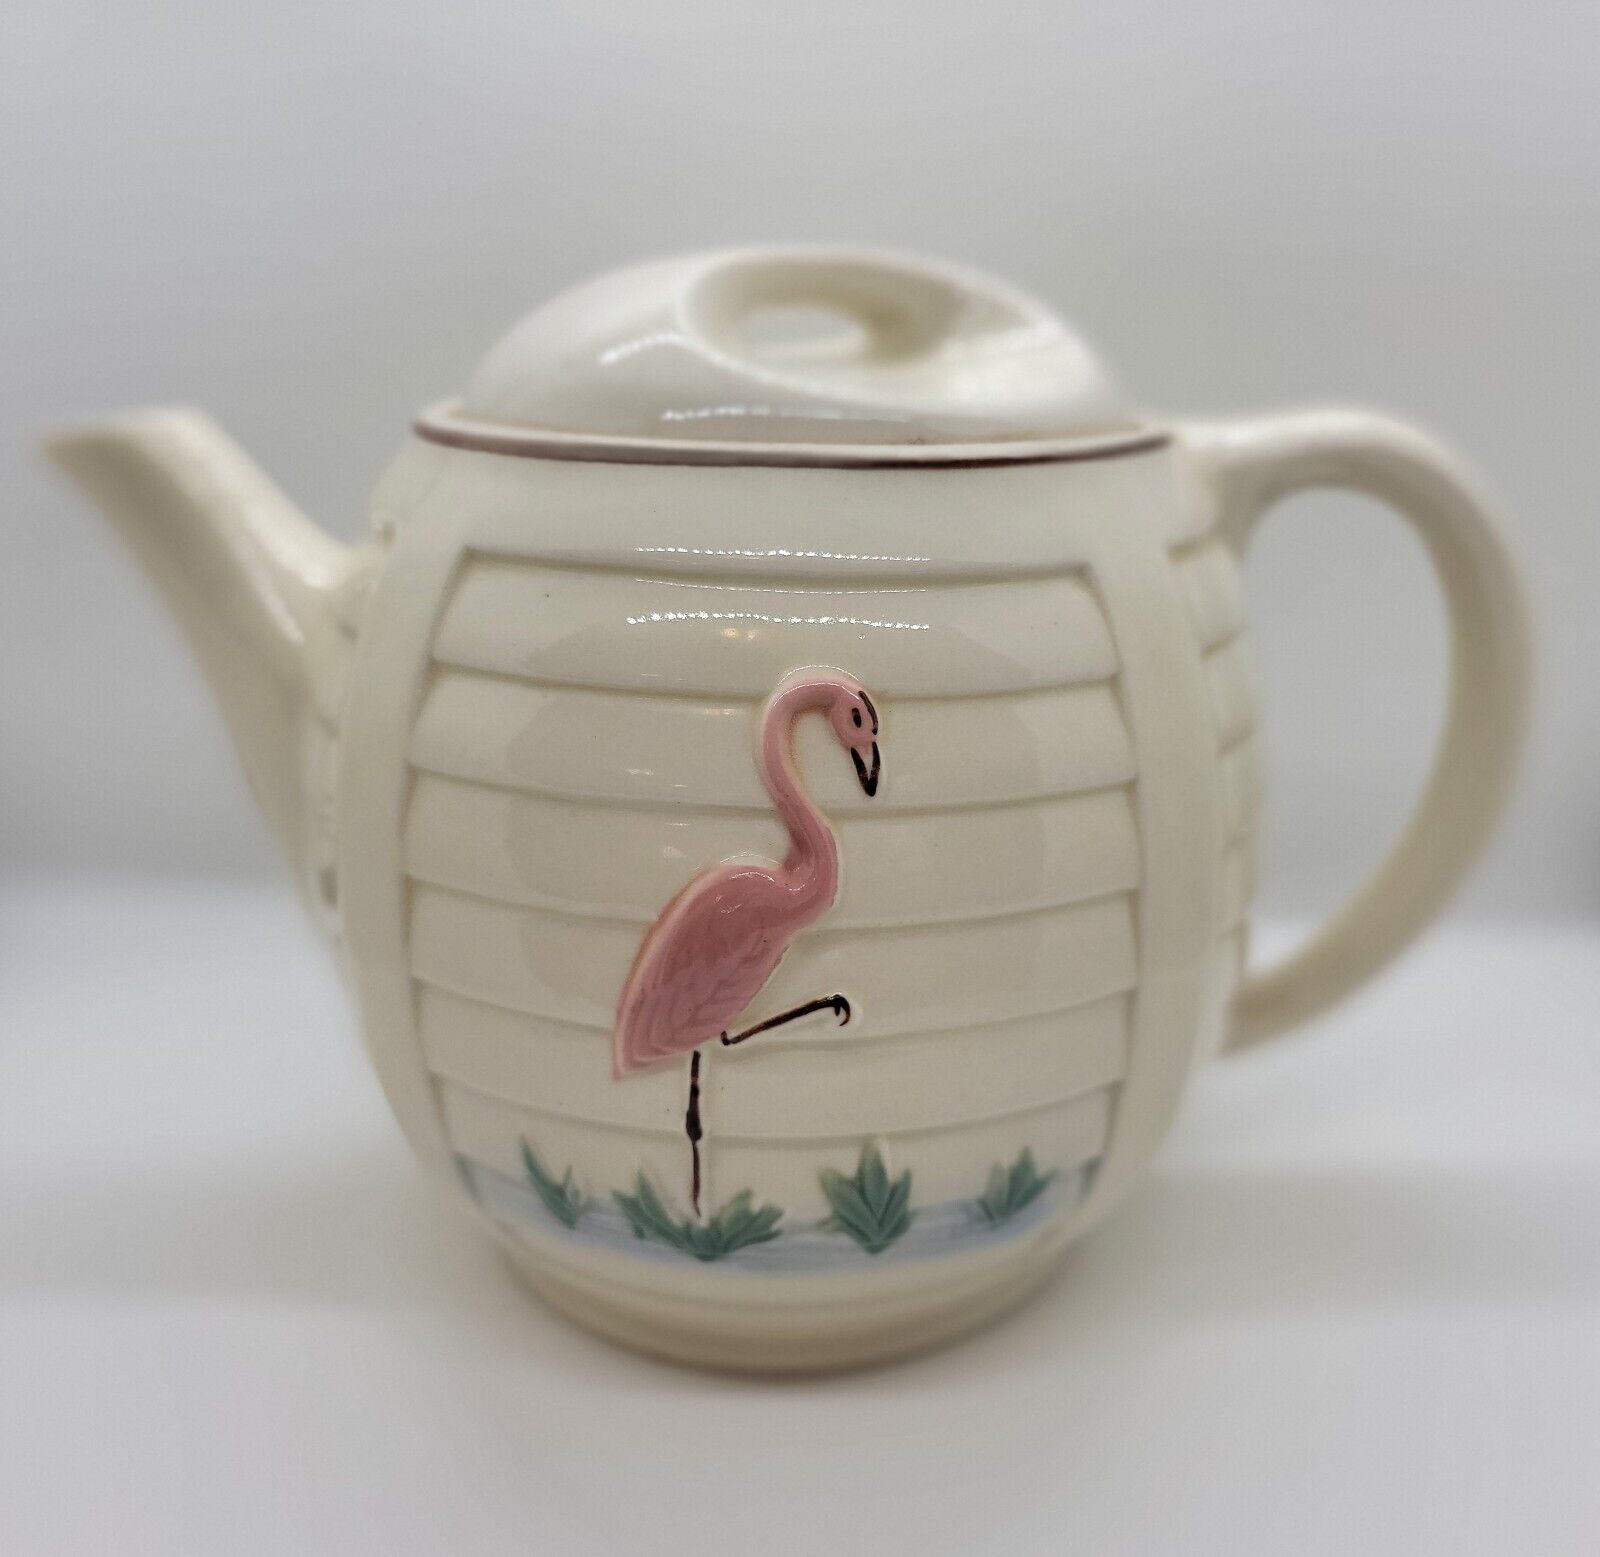 Vintage Porcelier Vitreous China Handpainted Pink Flamingo Tea Pot MCM Retro